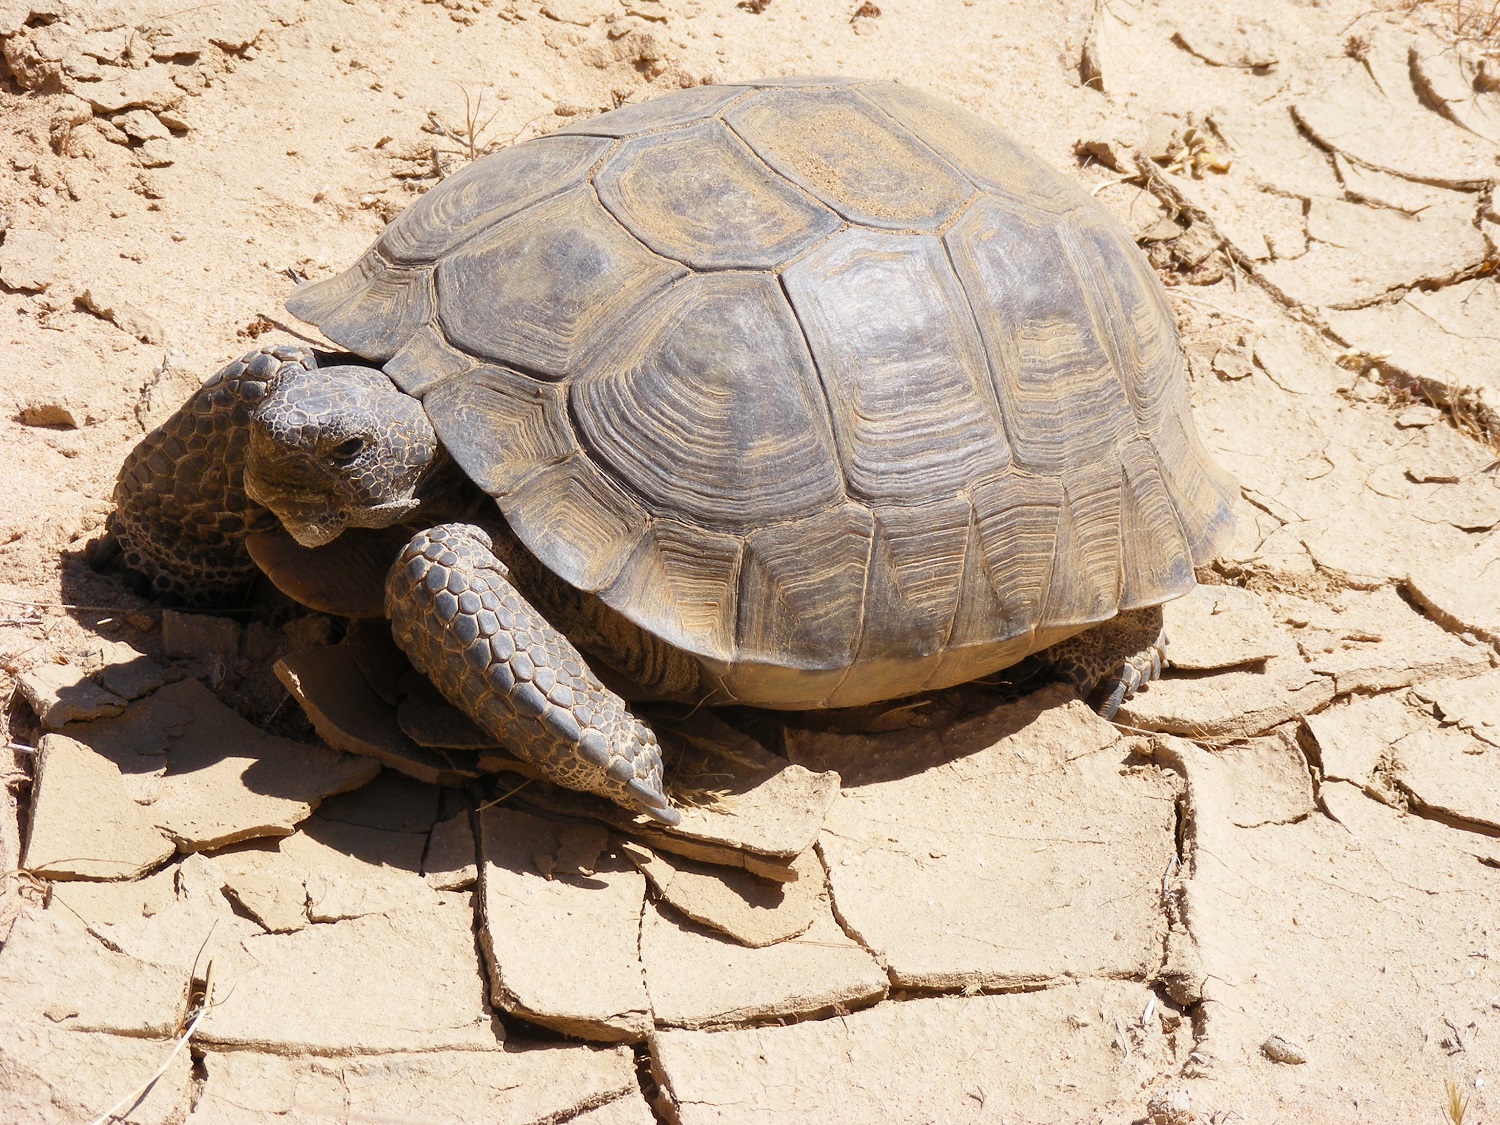 Desert Tortoise (Resized)